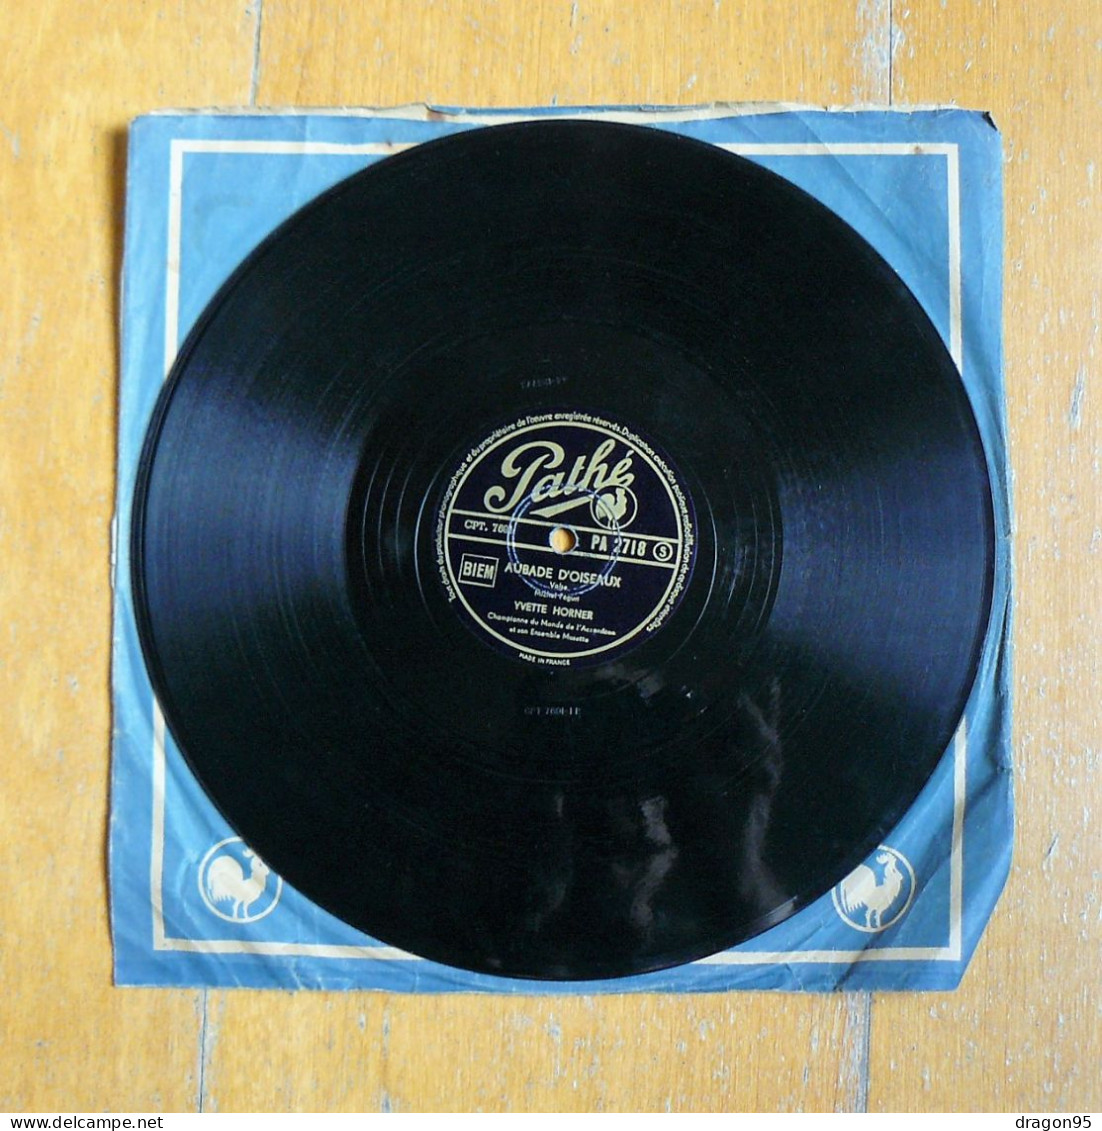 Yvette HORNER : Aubade D'oiseaux / Espoirs Perdus - Pathé PA 2718 - 78 Rpm - Gramophone Records